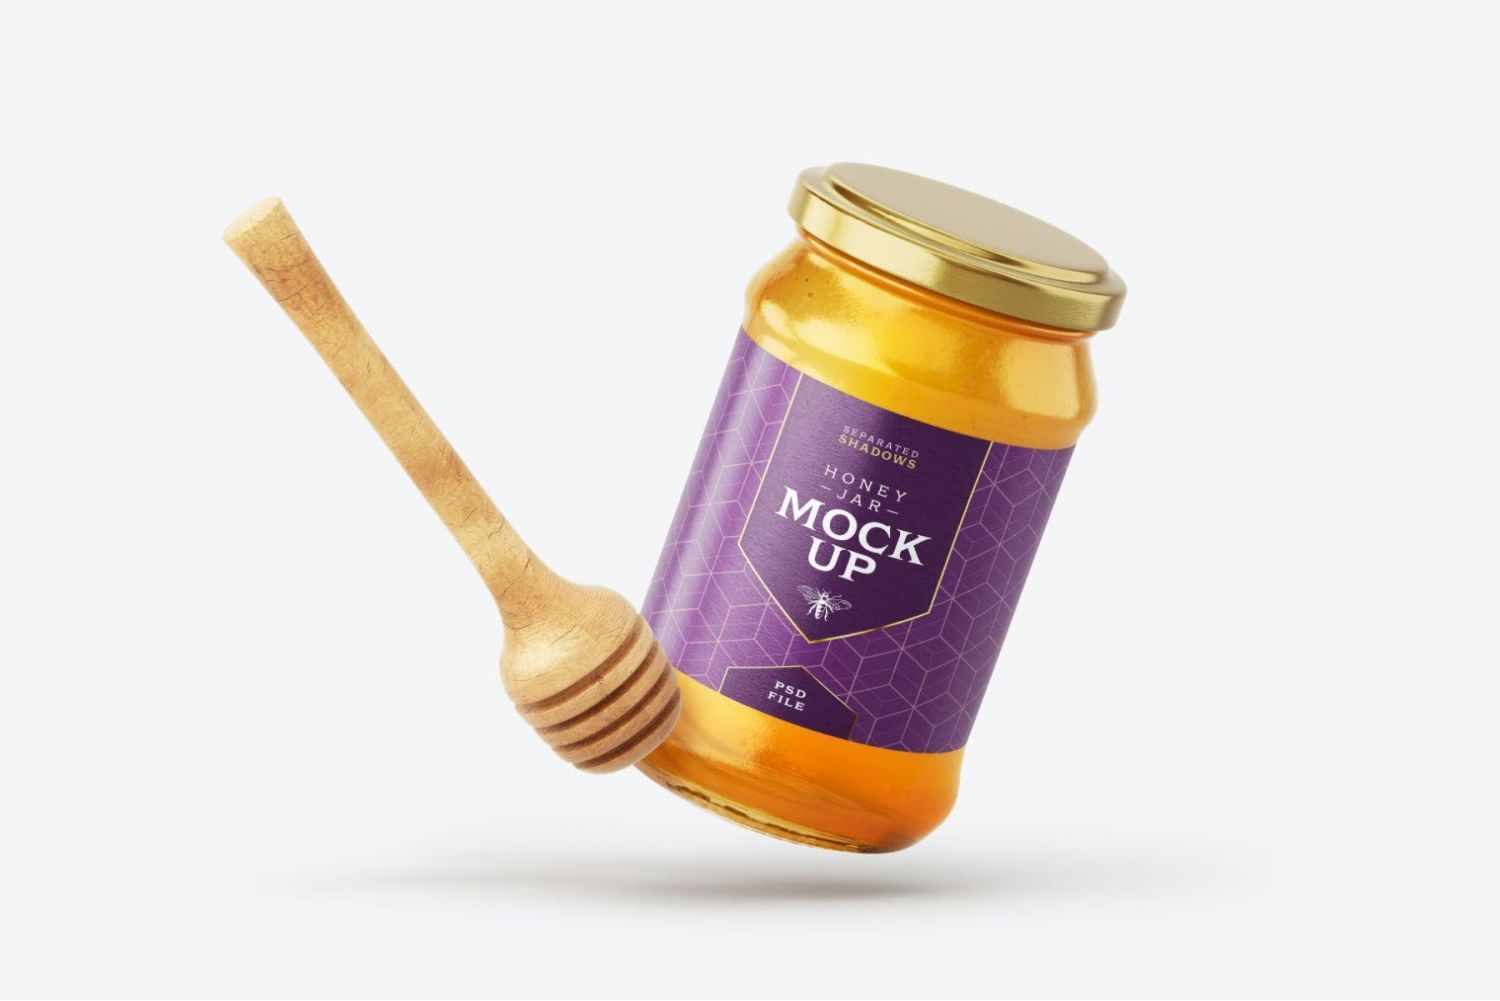 带北斗的蜂蜜罐样机套装 Honey Jar Mockup Set With Dipper插图8